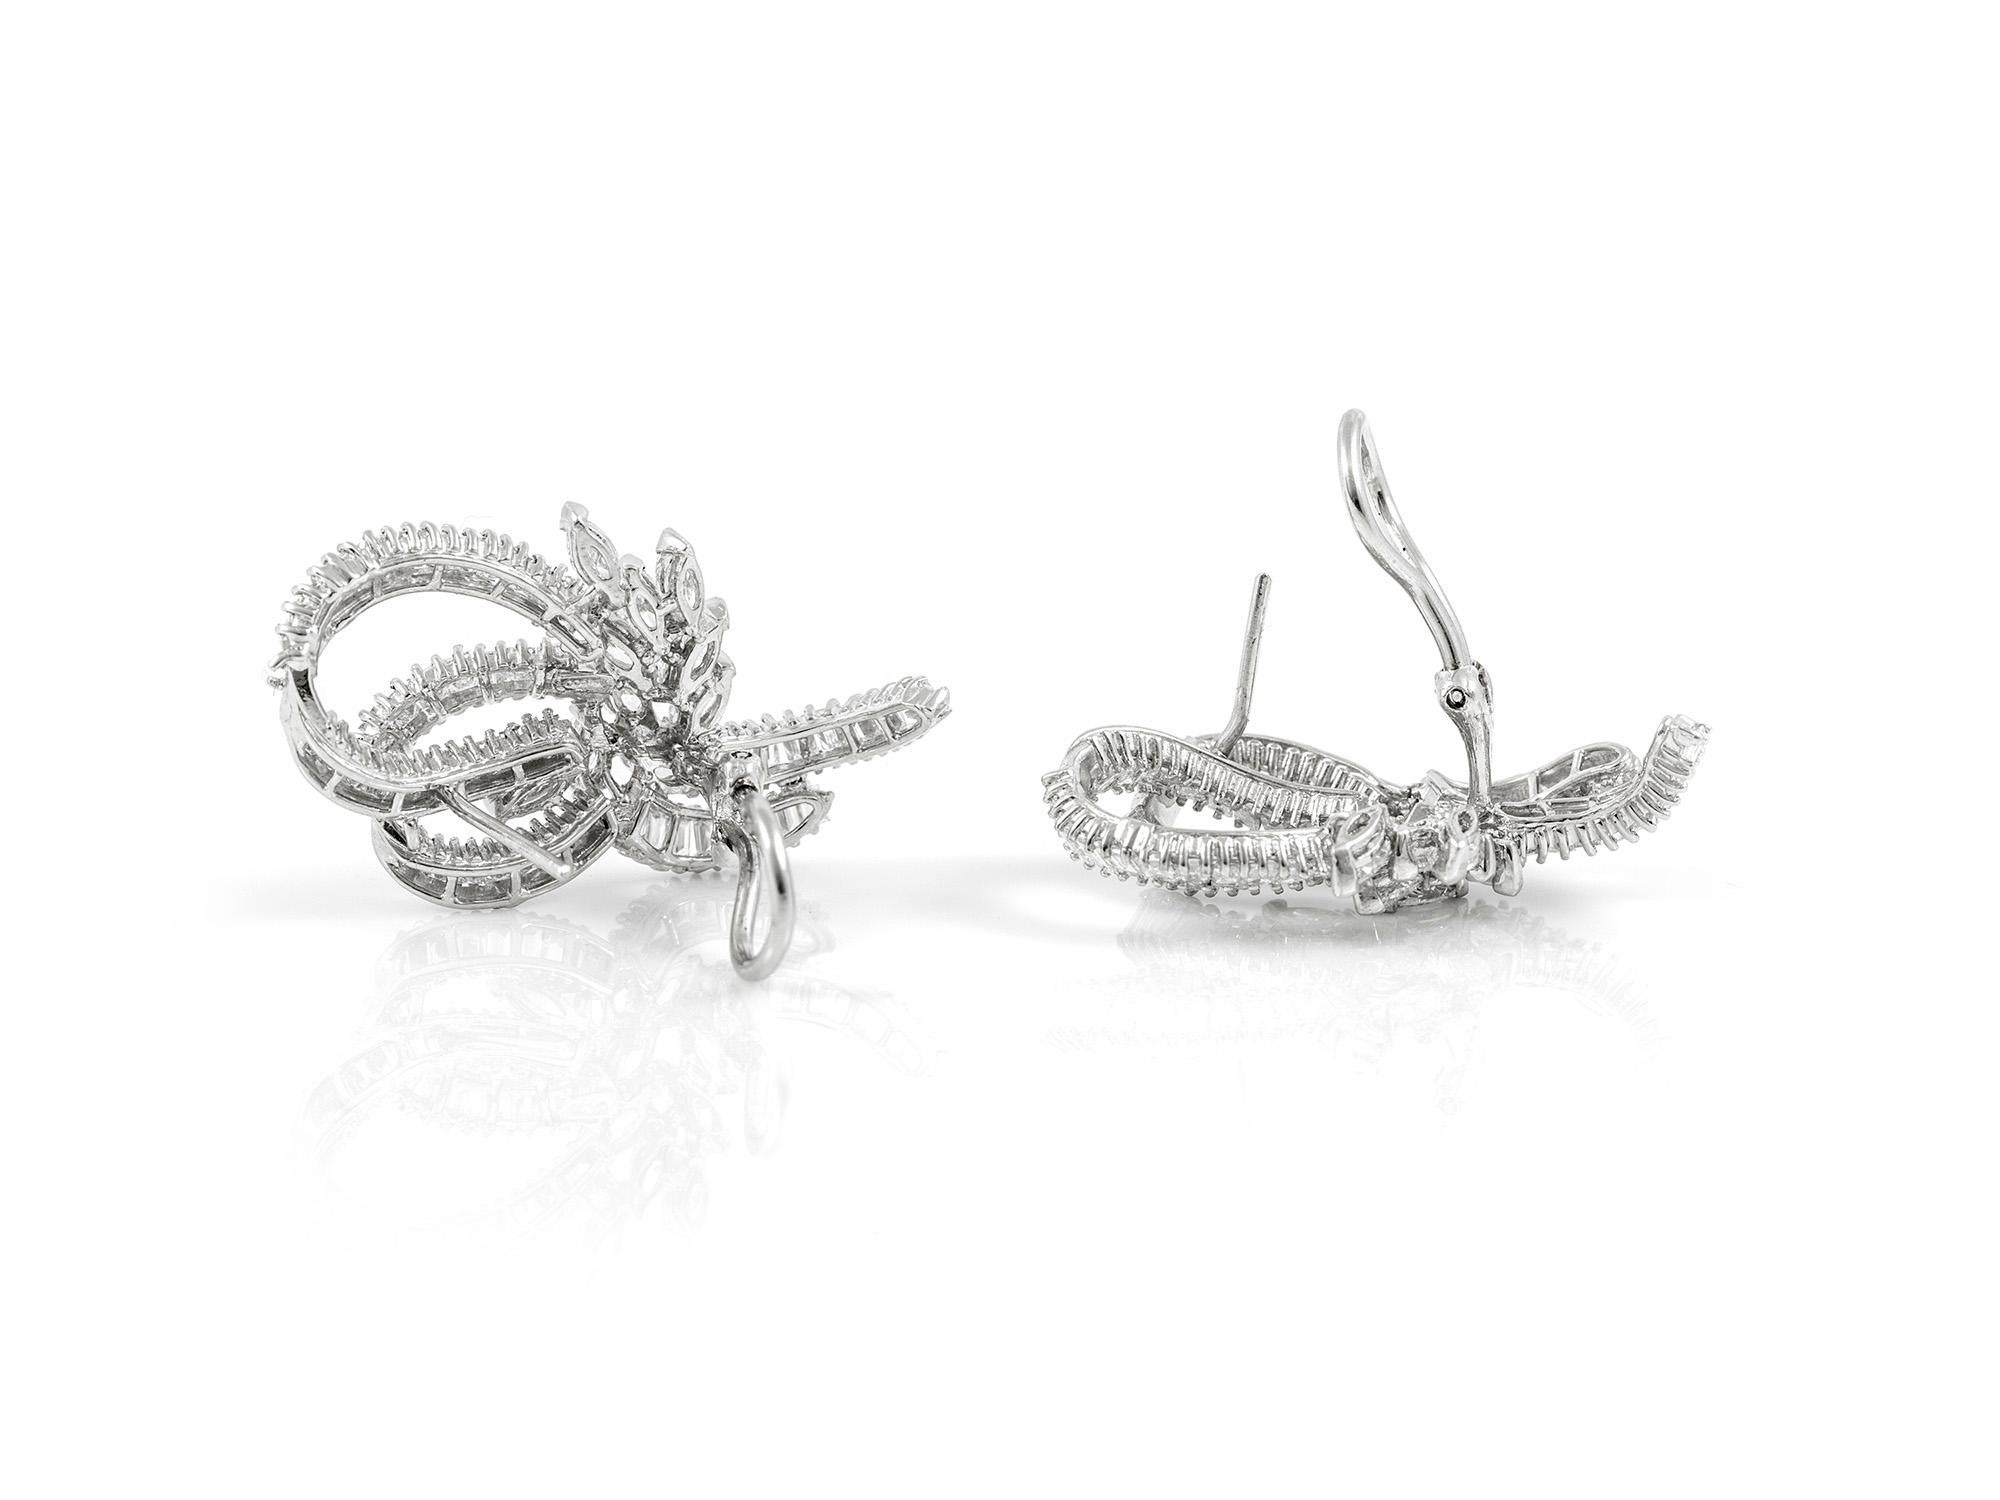 Die Ohrringe sind fein in Platin mit verschiedenen Diamanten geschliffen mit einem Gesamtgewicht von etwa 8,12 Karat gefertigt.